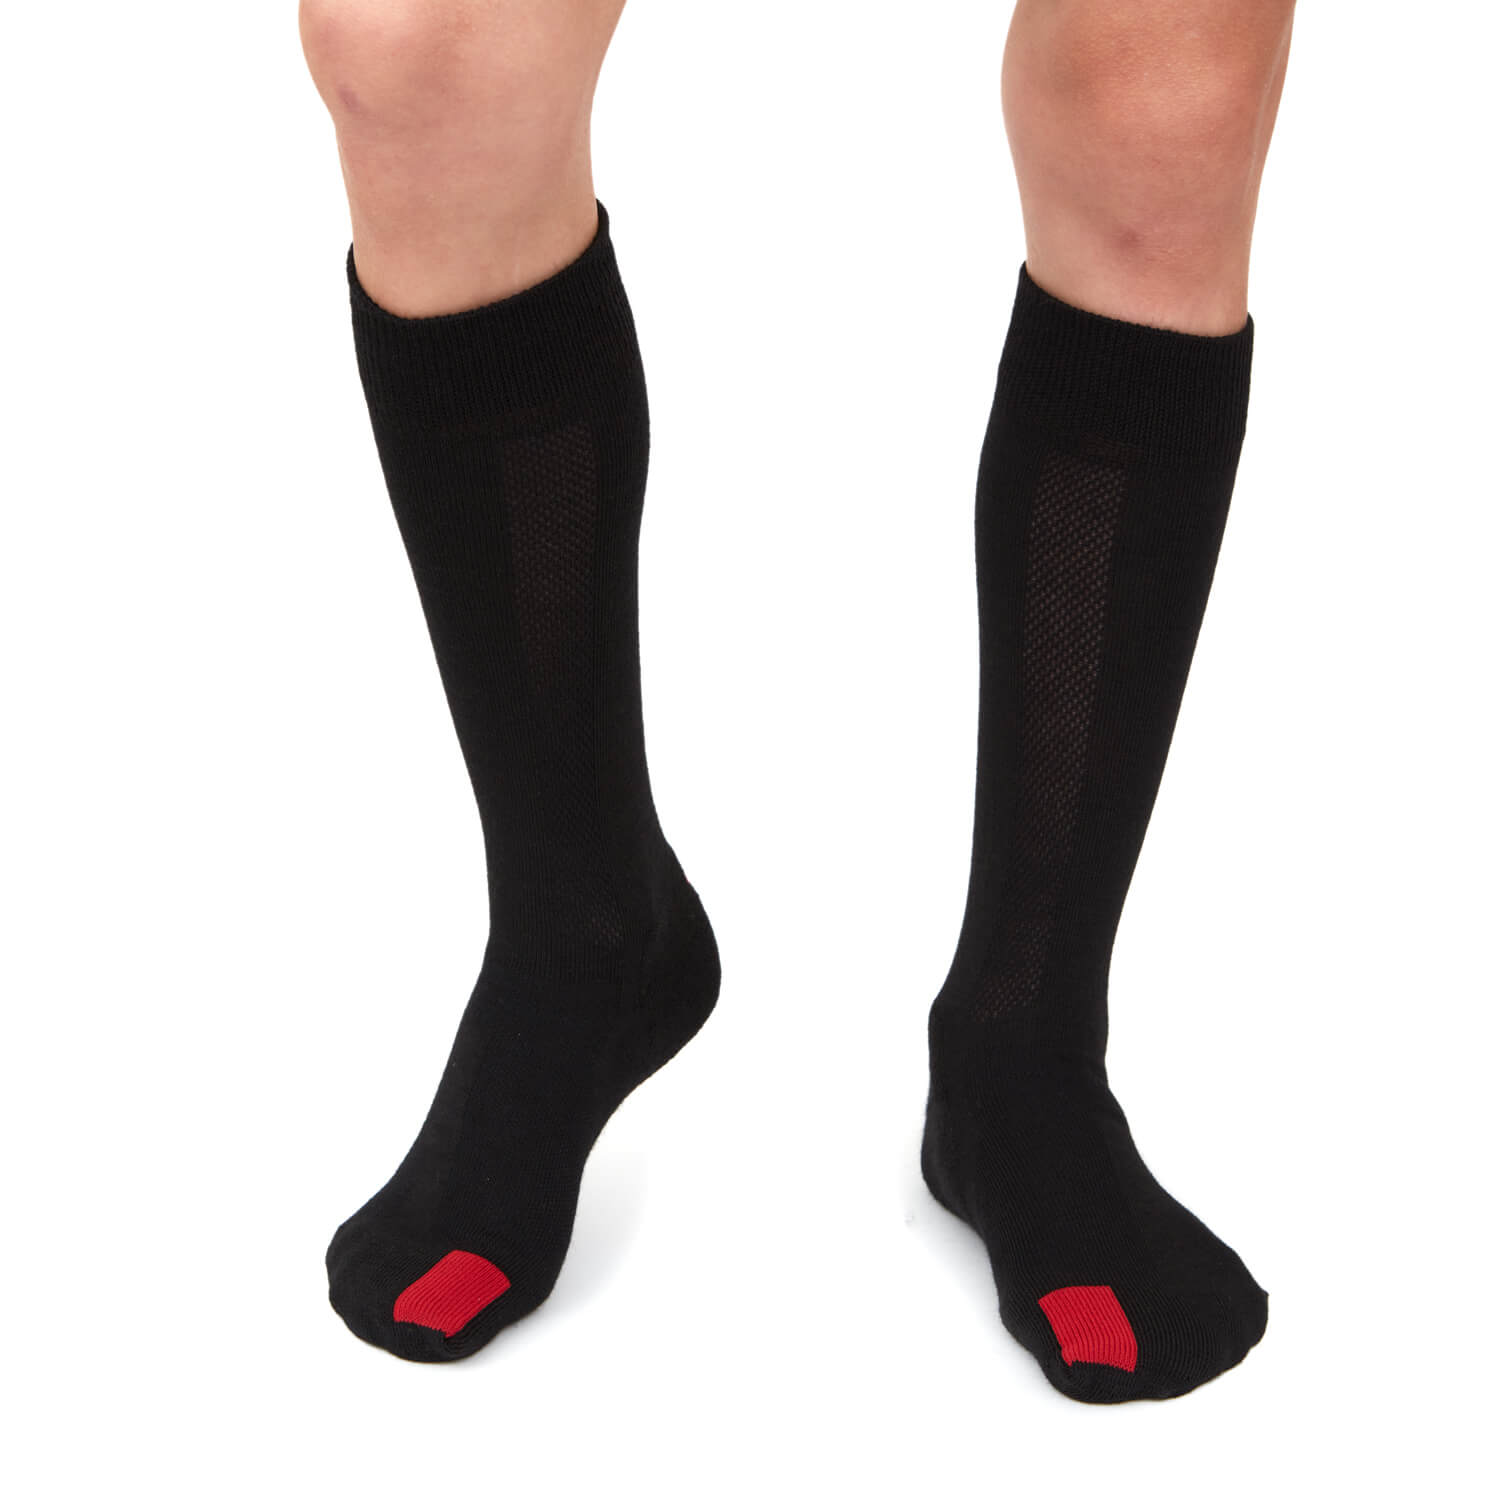 Plus12 Calcetines largos lana merino negros-plus12-Cacles Barefoot